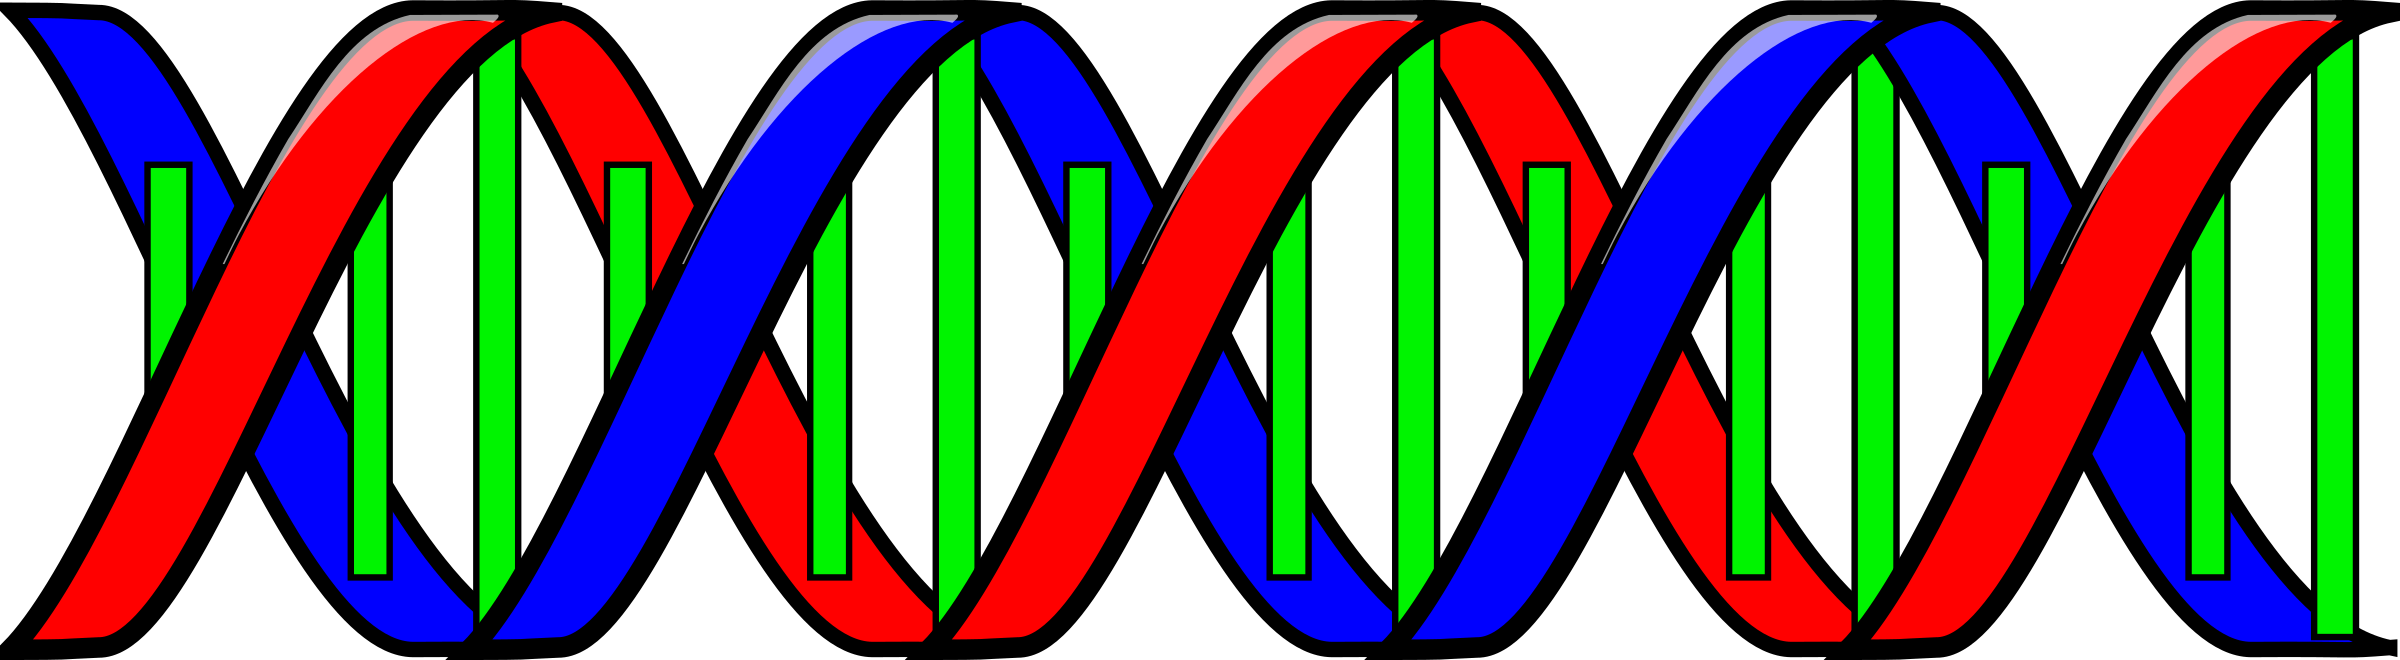 Double Helix (DNA)